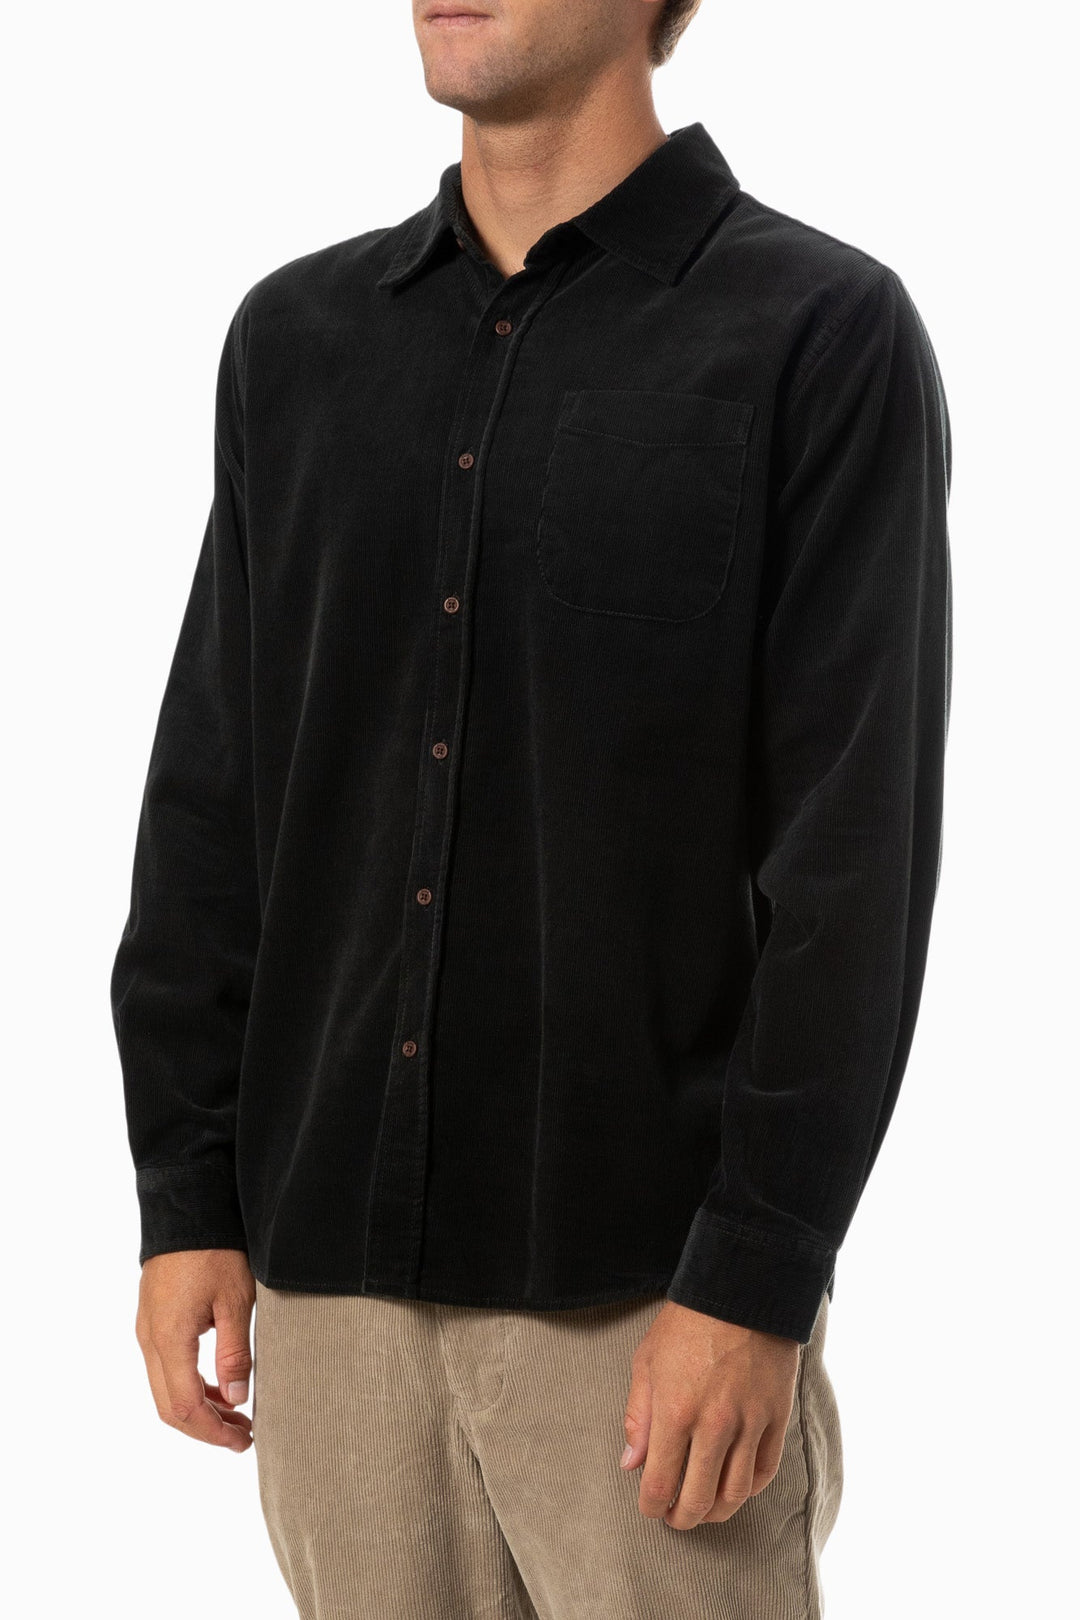 Katin Granada Shirt - Black Wash - Sun Diego Boardshop